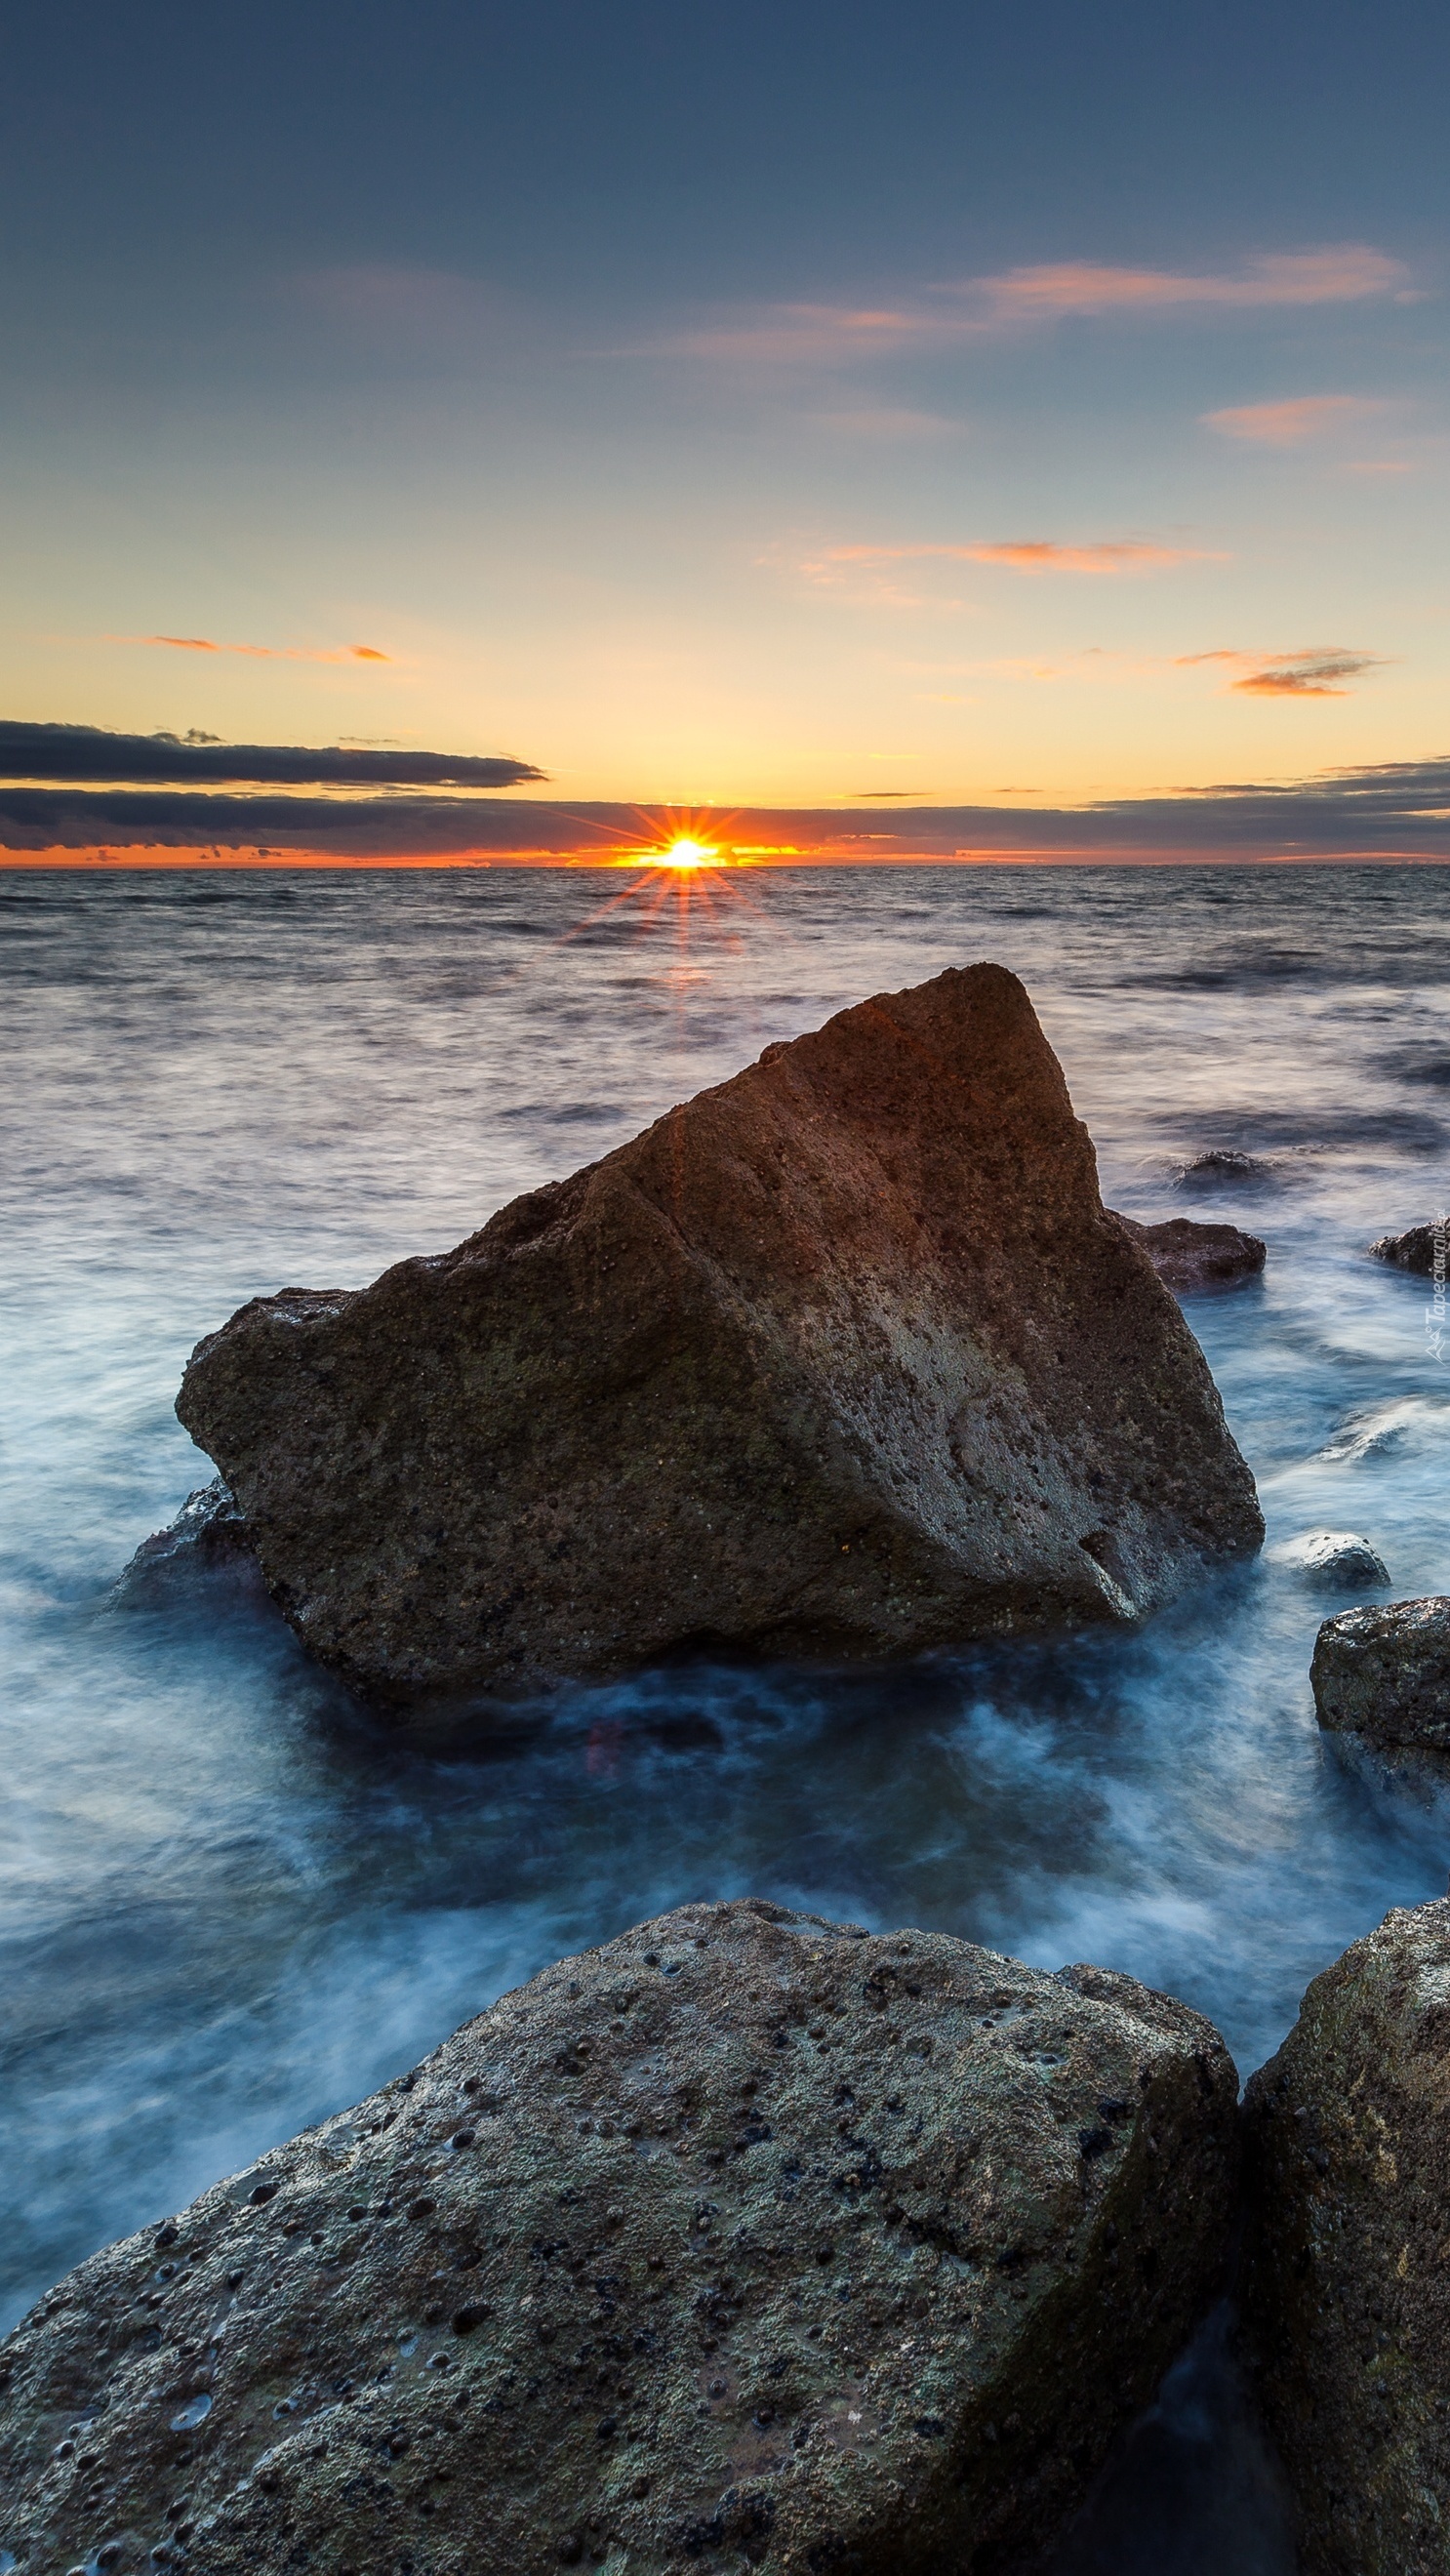 Kamienie na brzegu morza w promieniach zachodzącego słońca